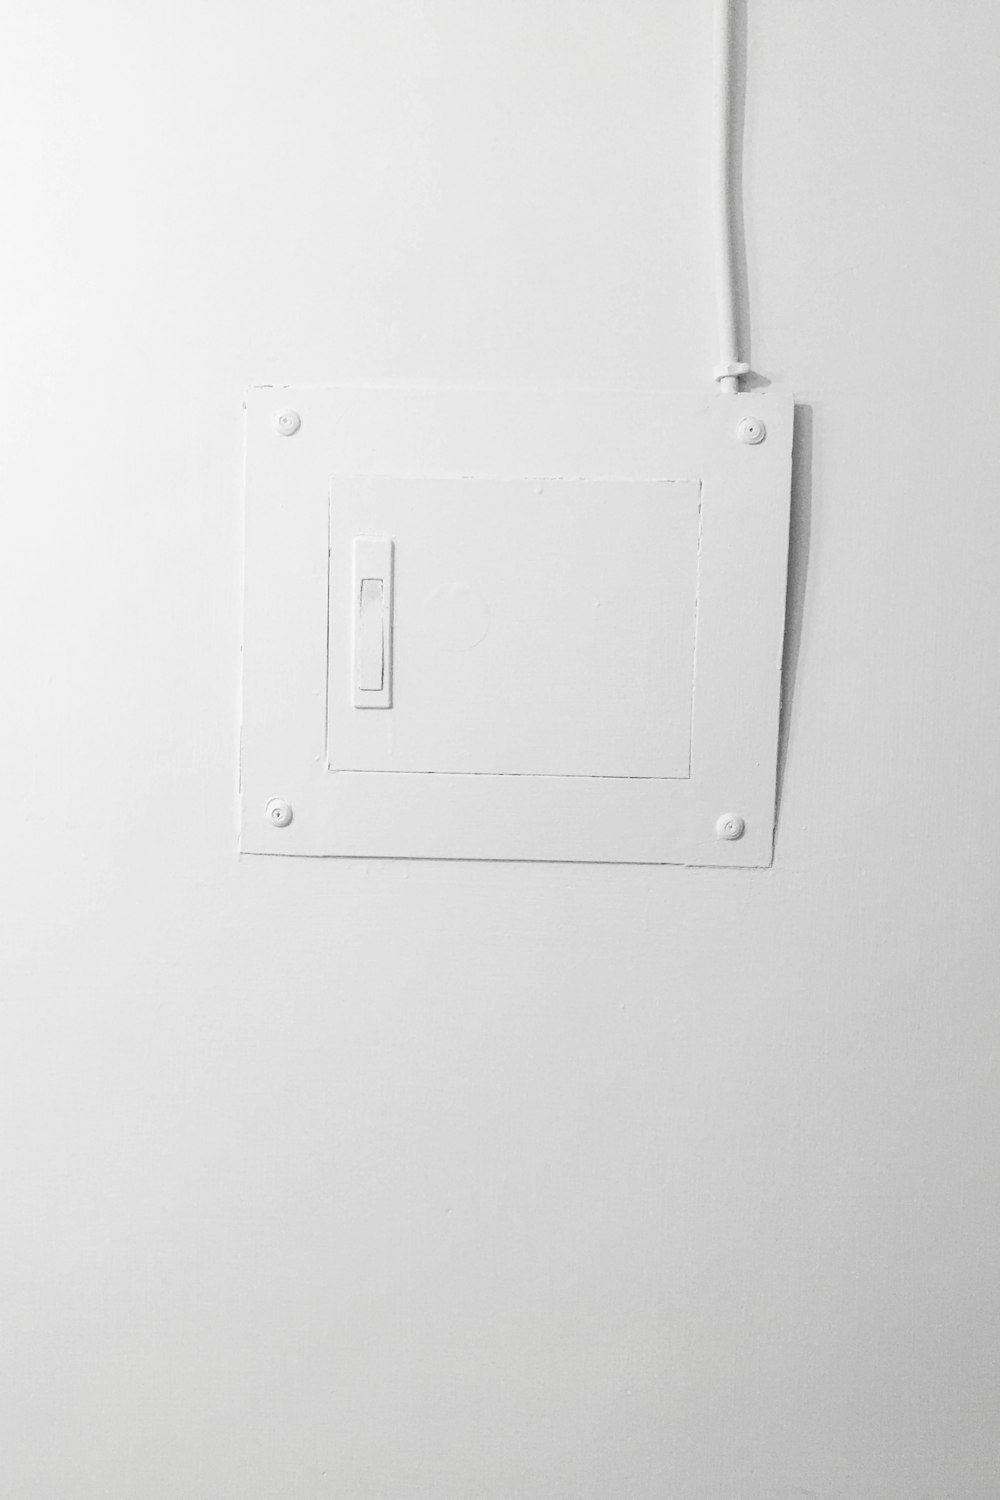 Interrupteur électrique blanc monté sur un mur peint en blanc